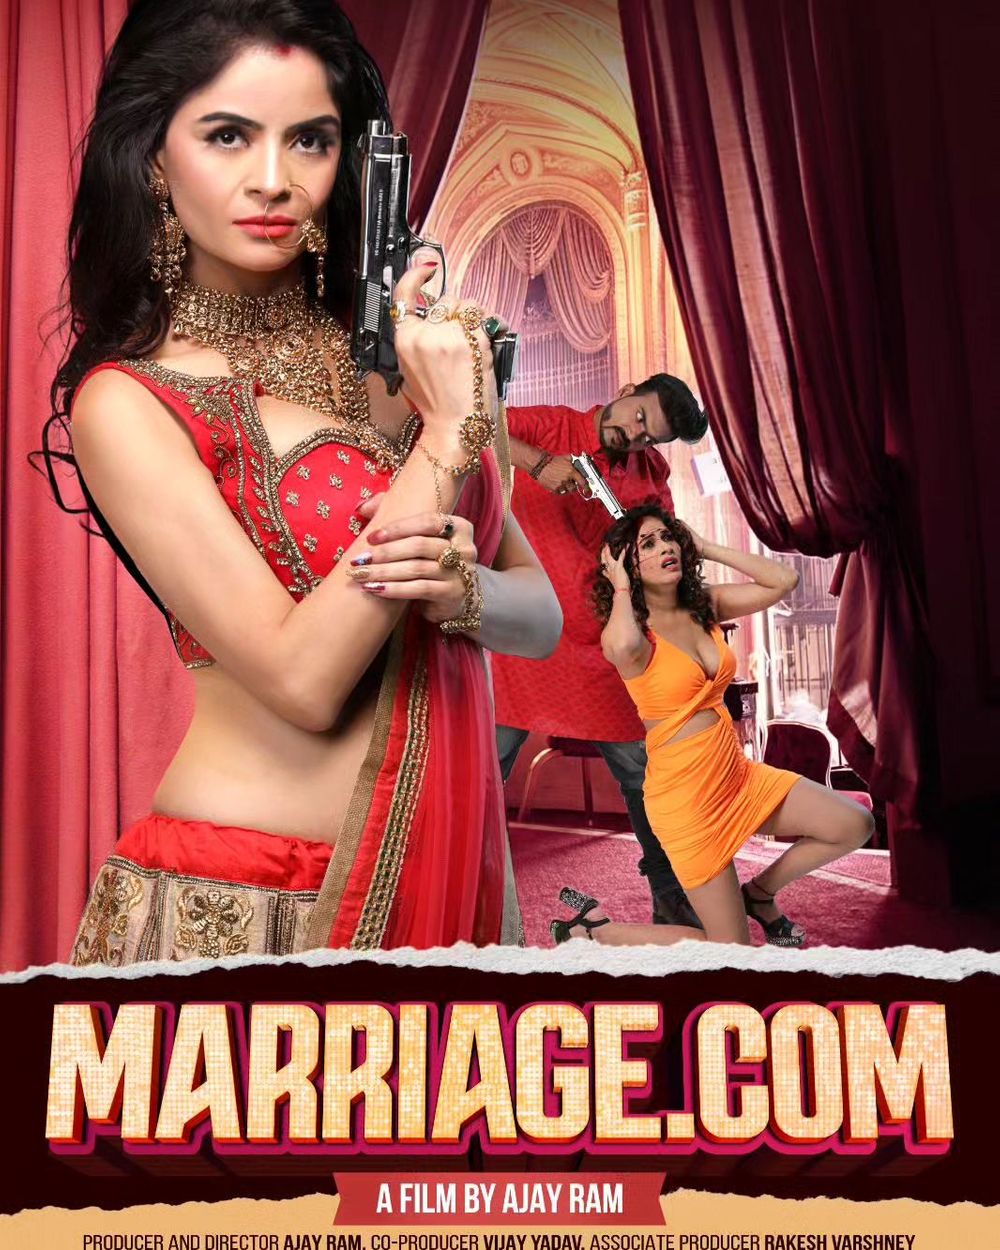 Marriage.com Movie Review